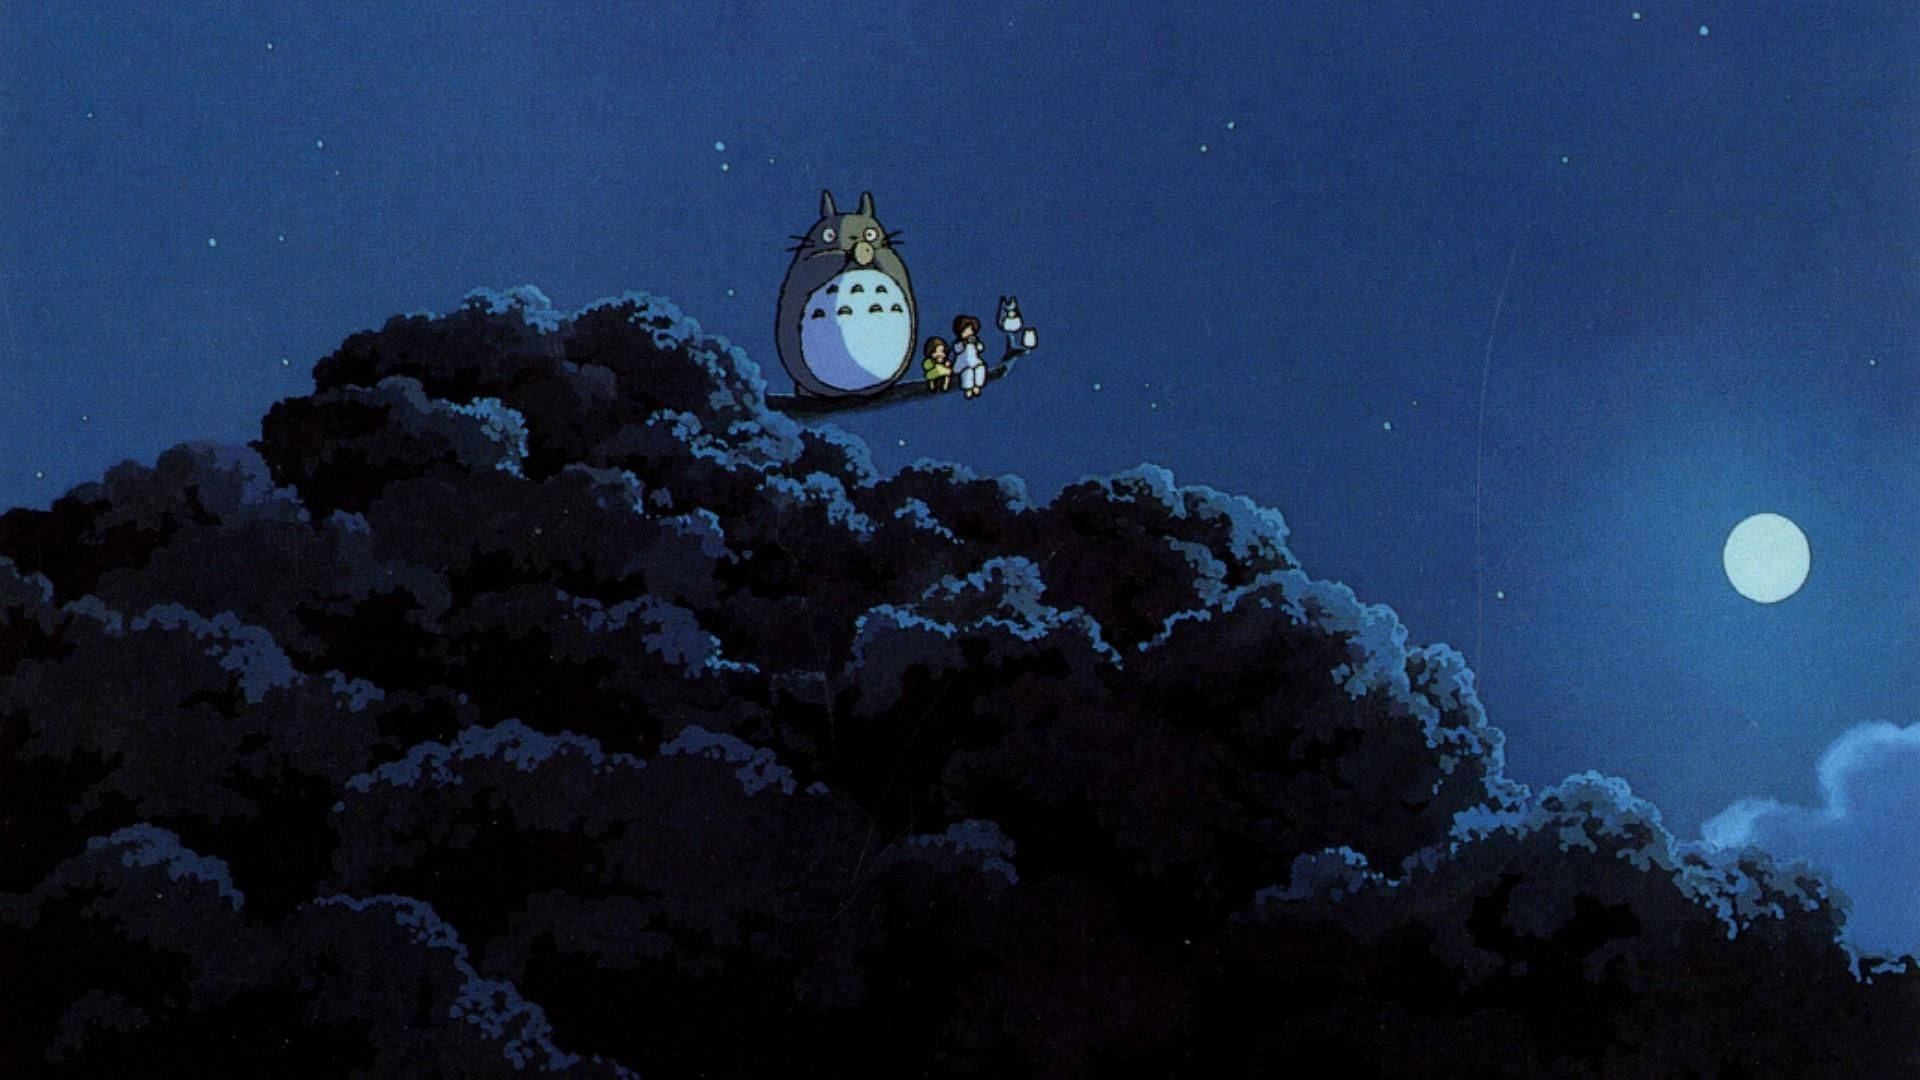 Studio Ghibli My Neighbor Totoro